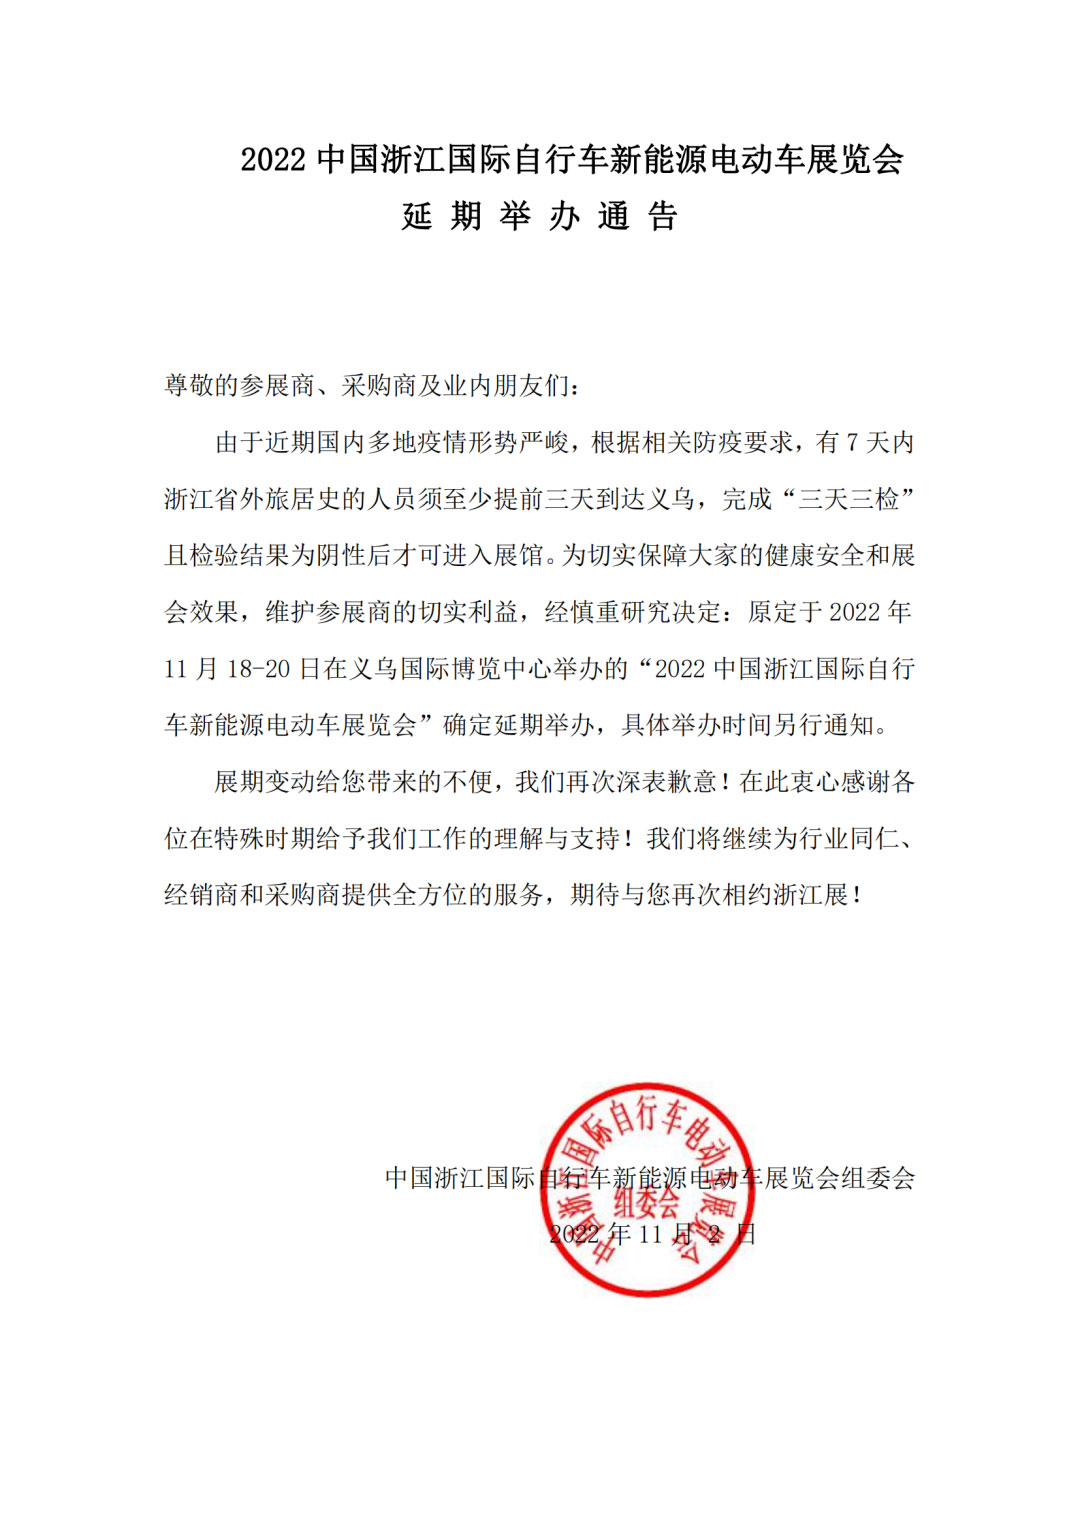 浙江国际自行车新能源电动车展览会延期